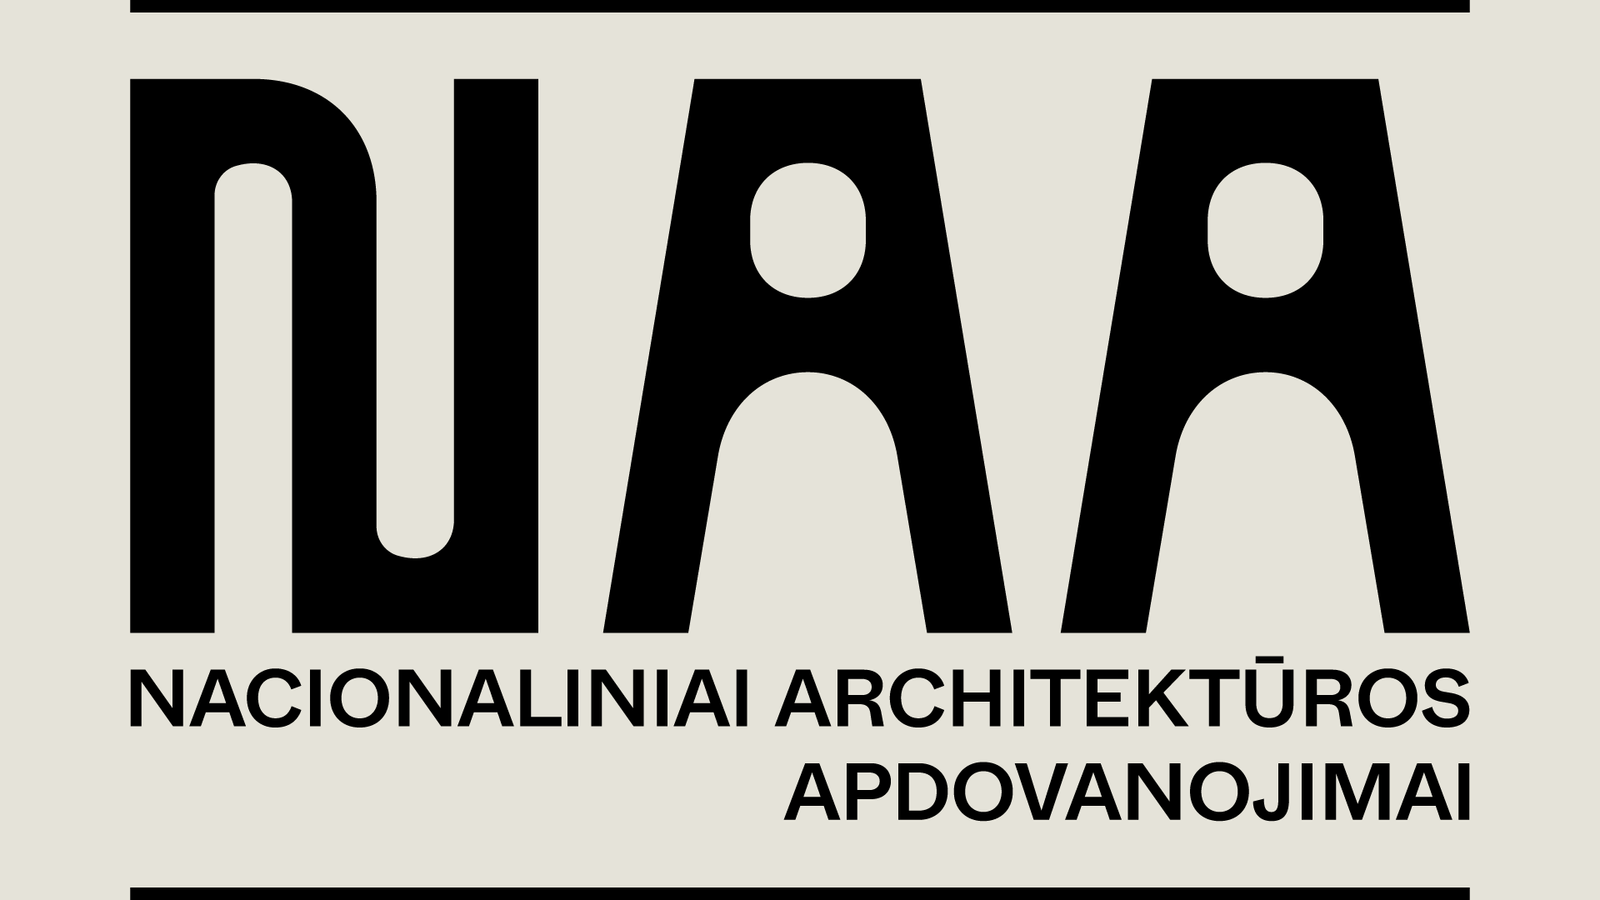 Nacionaliniai architektūros apdovanojimai